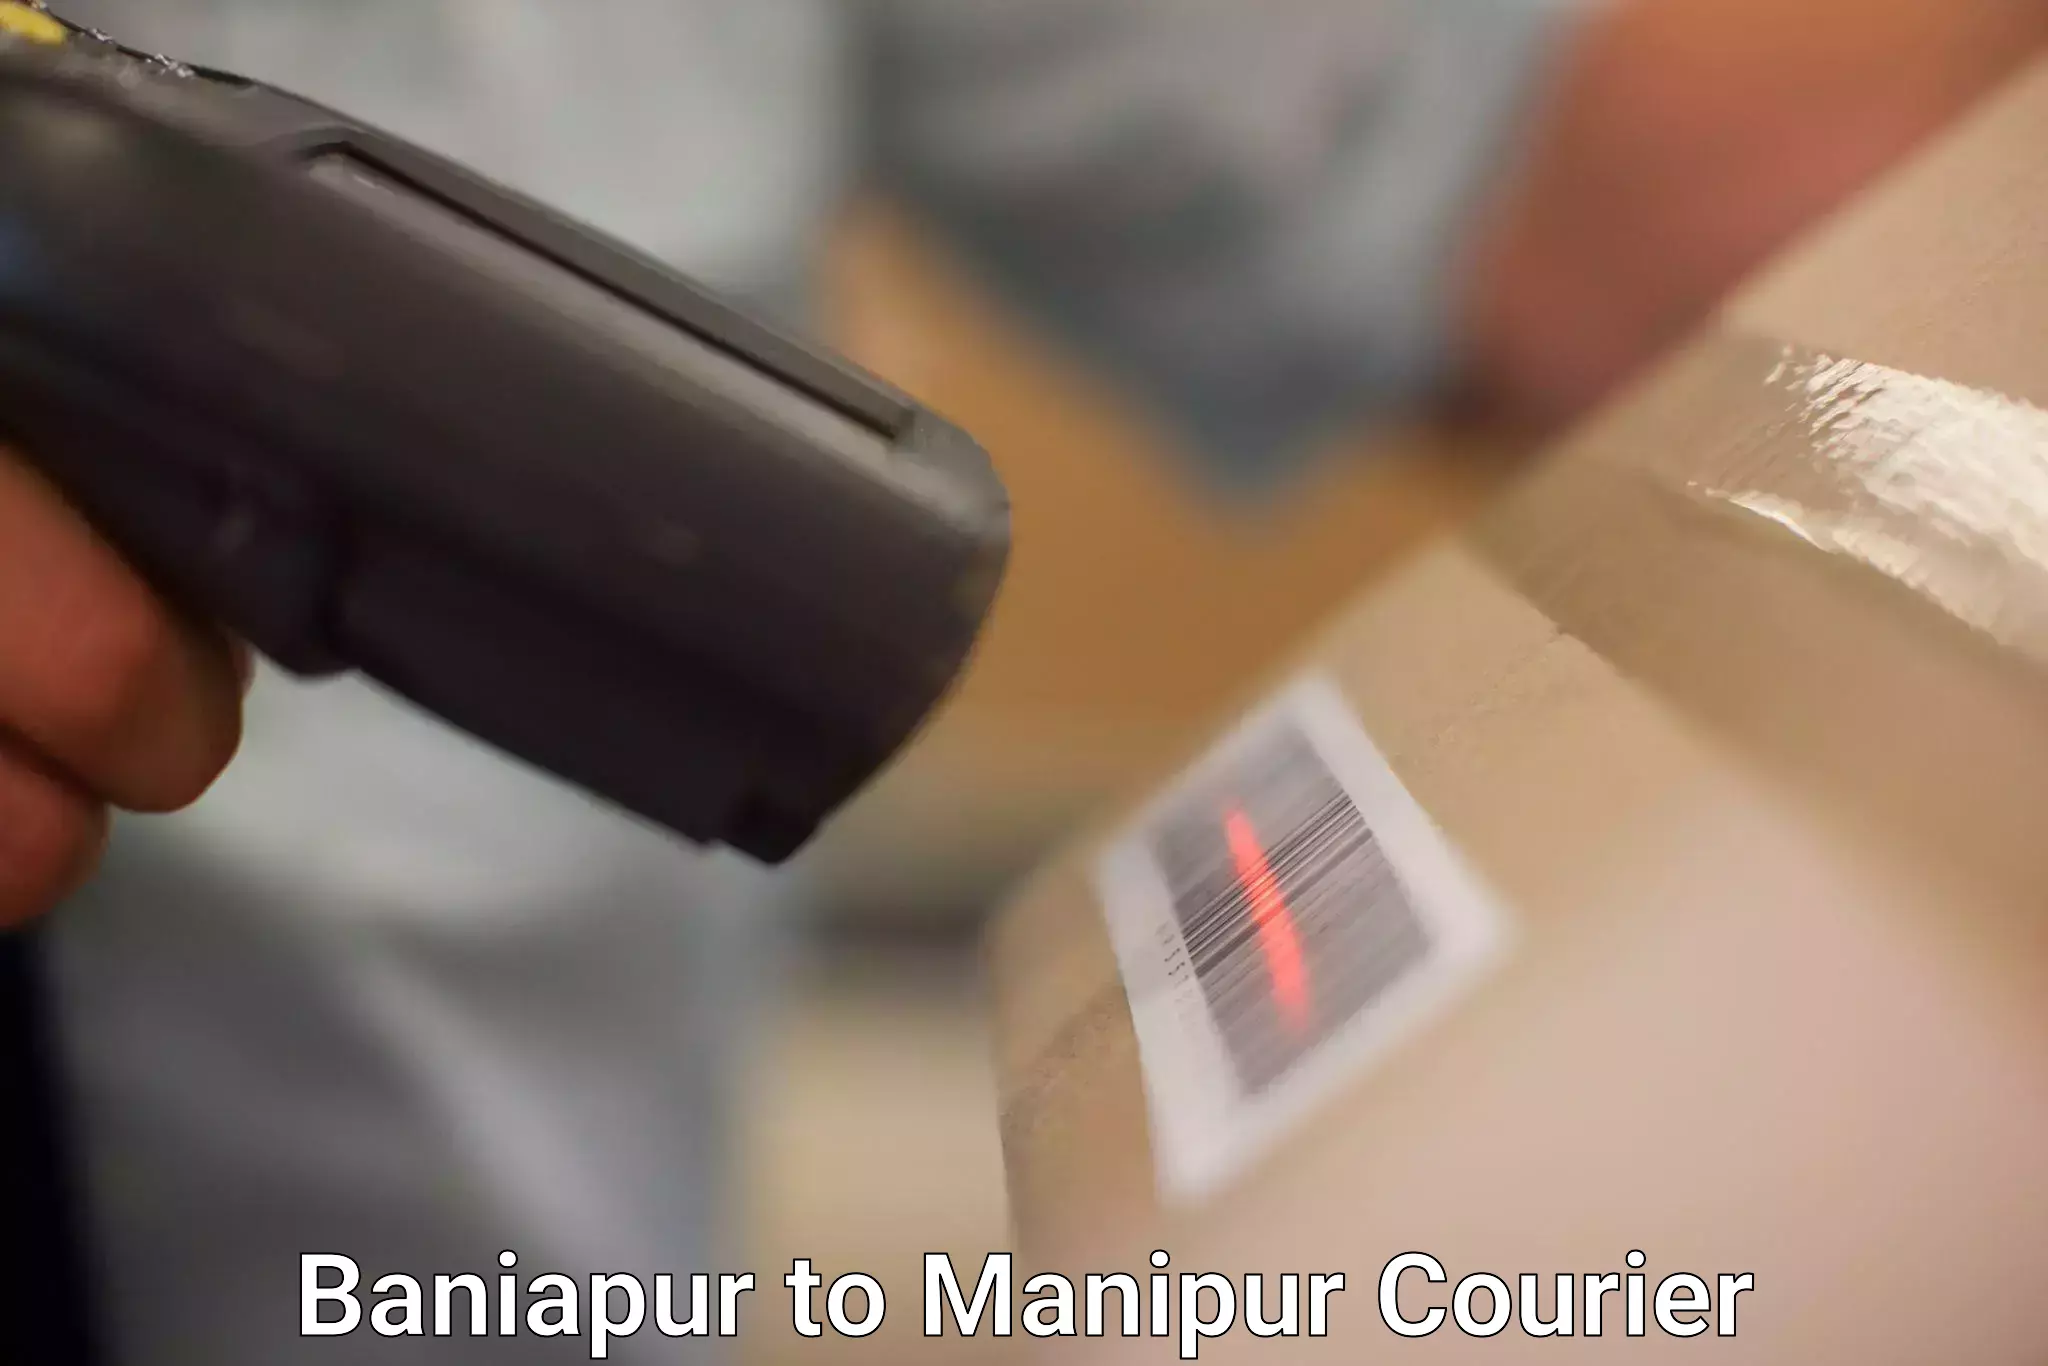 Next-day freight services Baniapur to Imphal